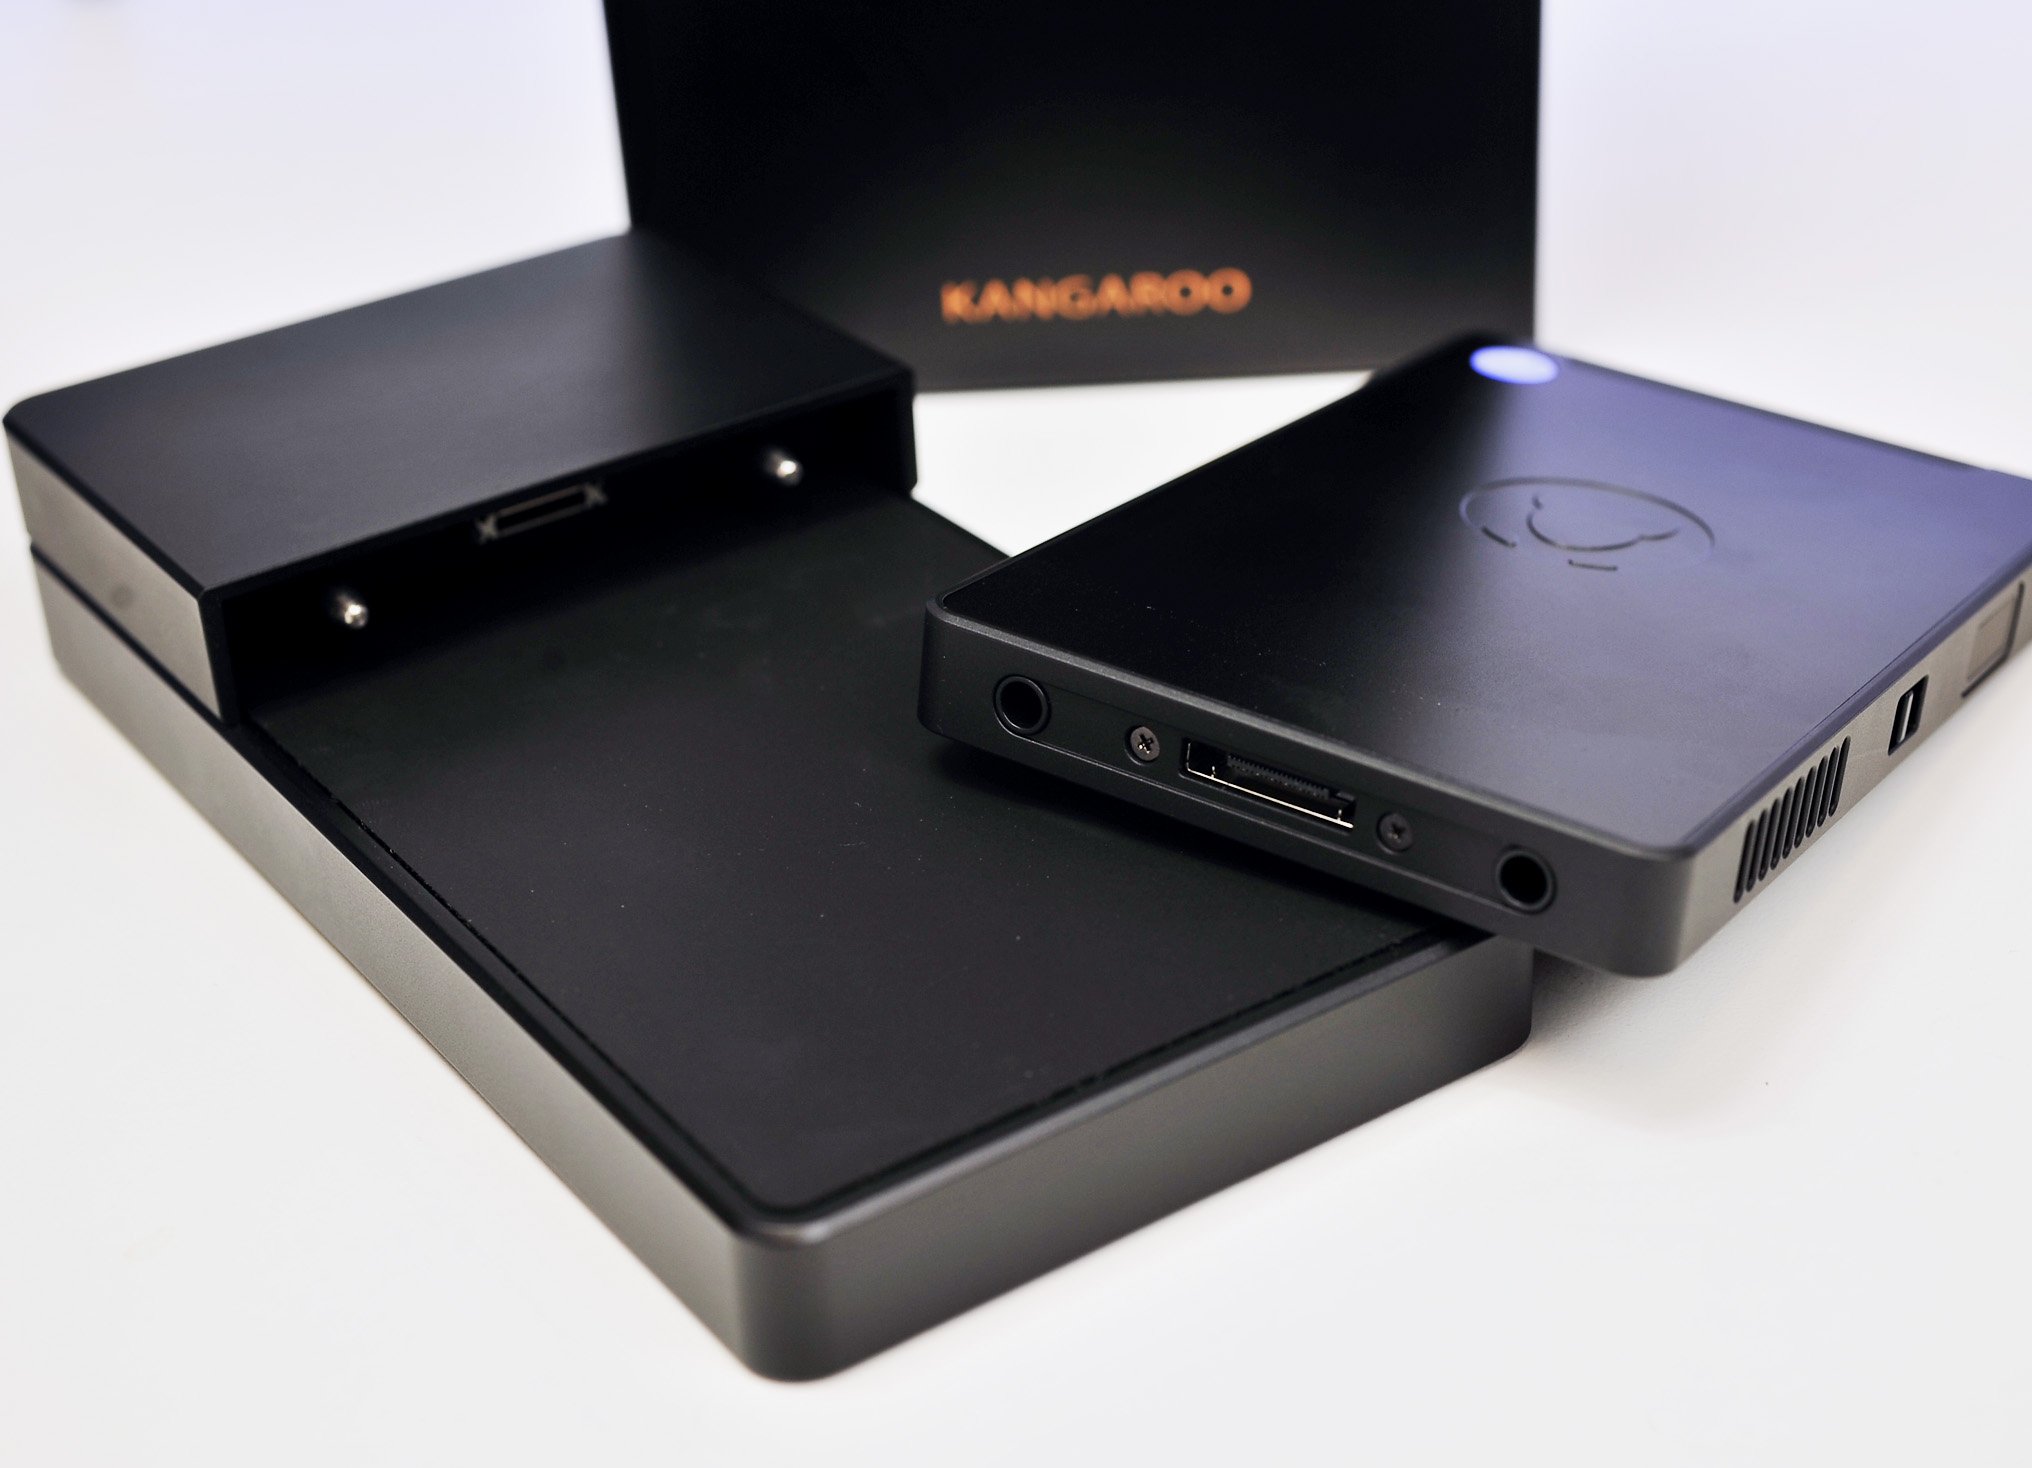 Kangaroo Mobile Desktop Pro